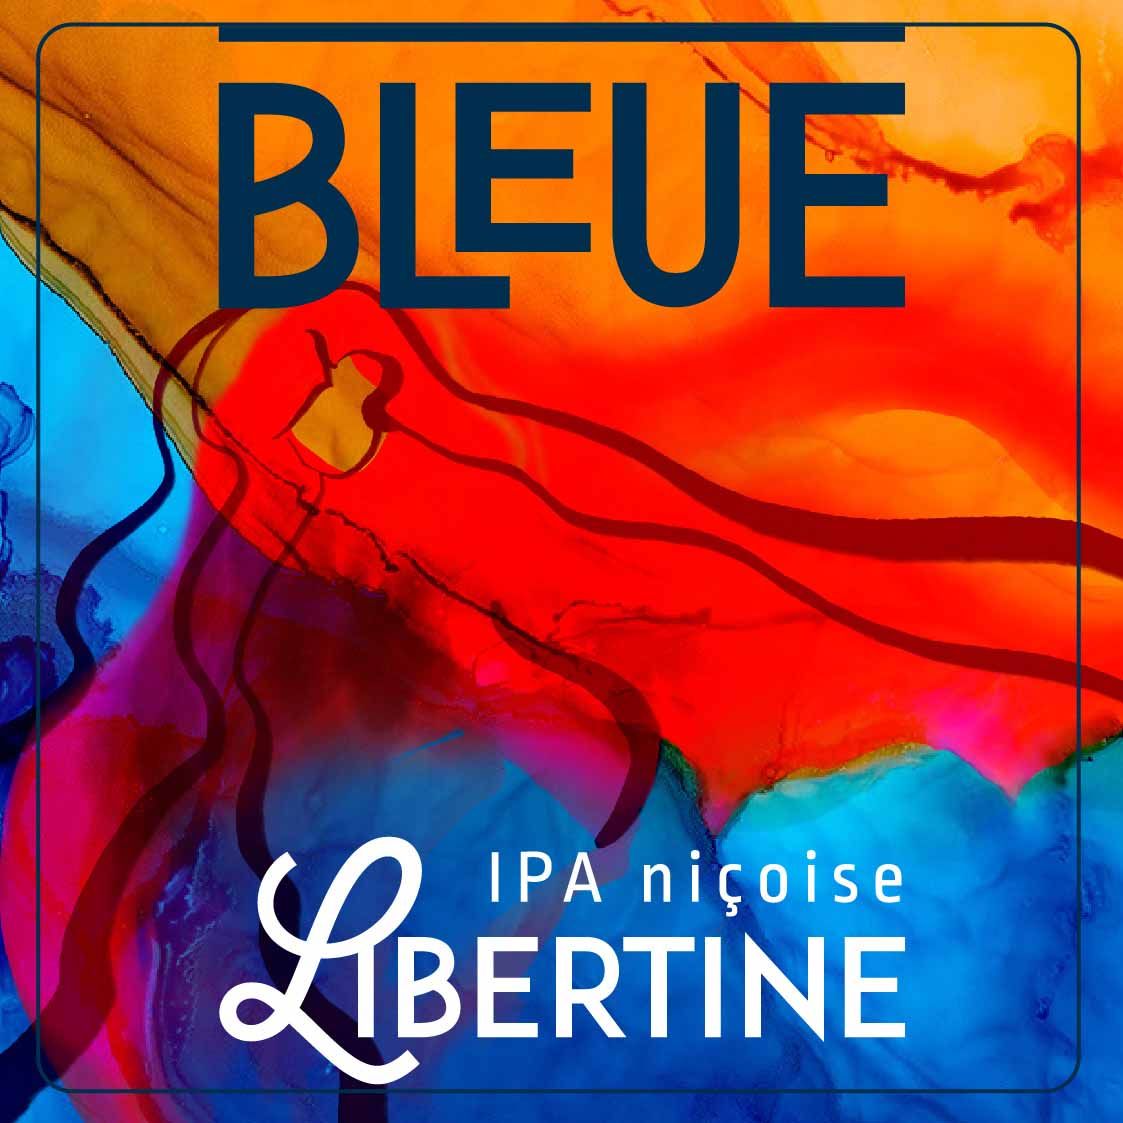 étiquette pour bière Libertine IPA rousse